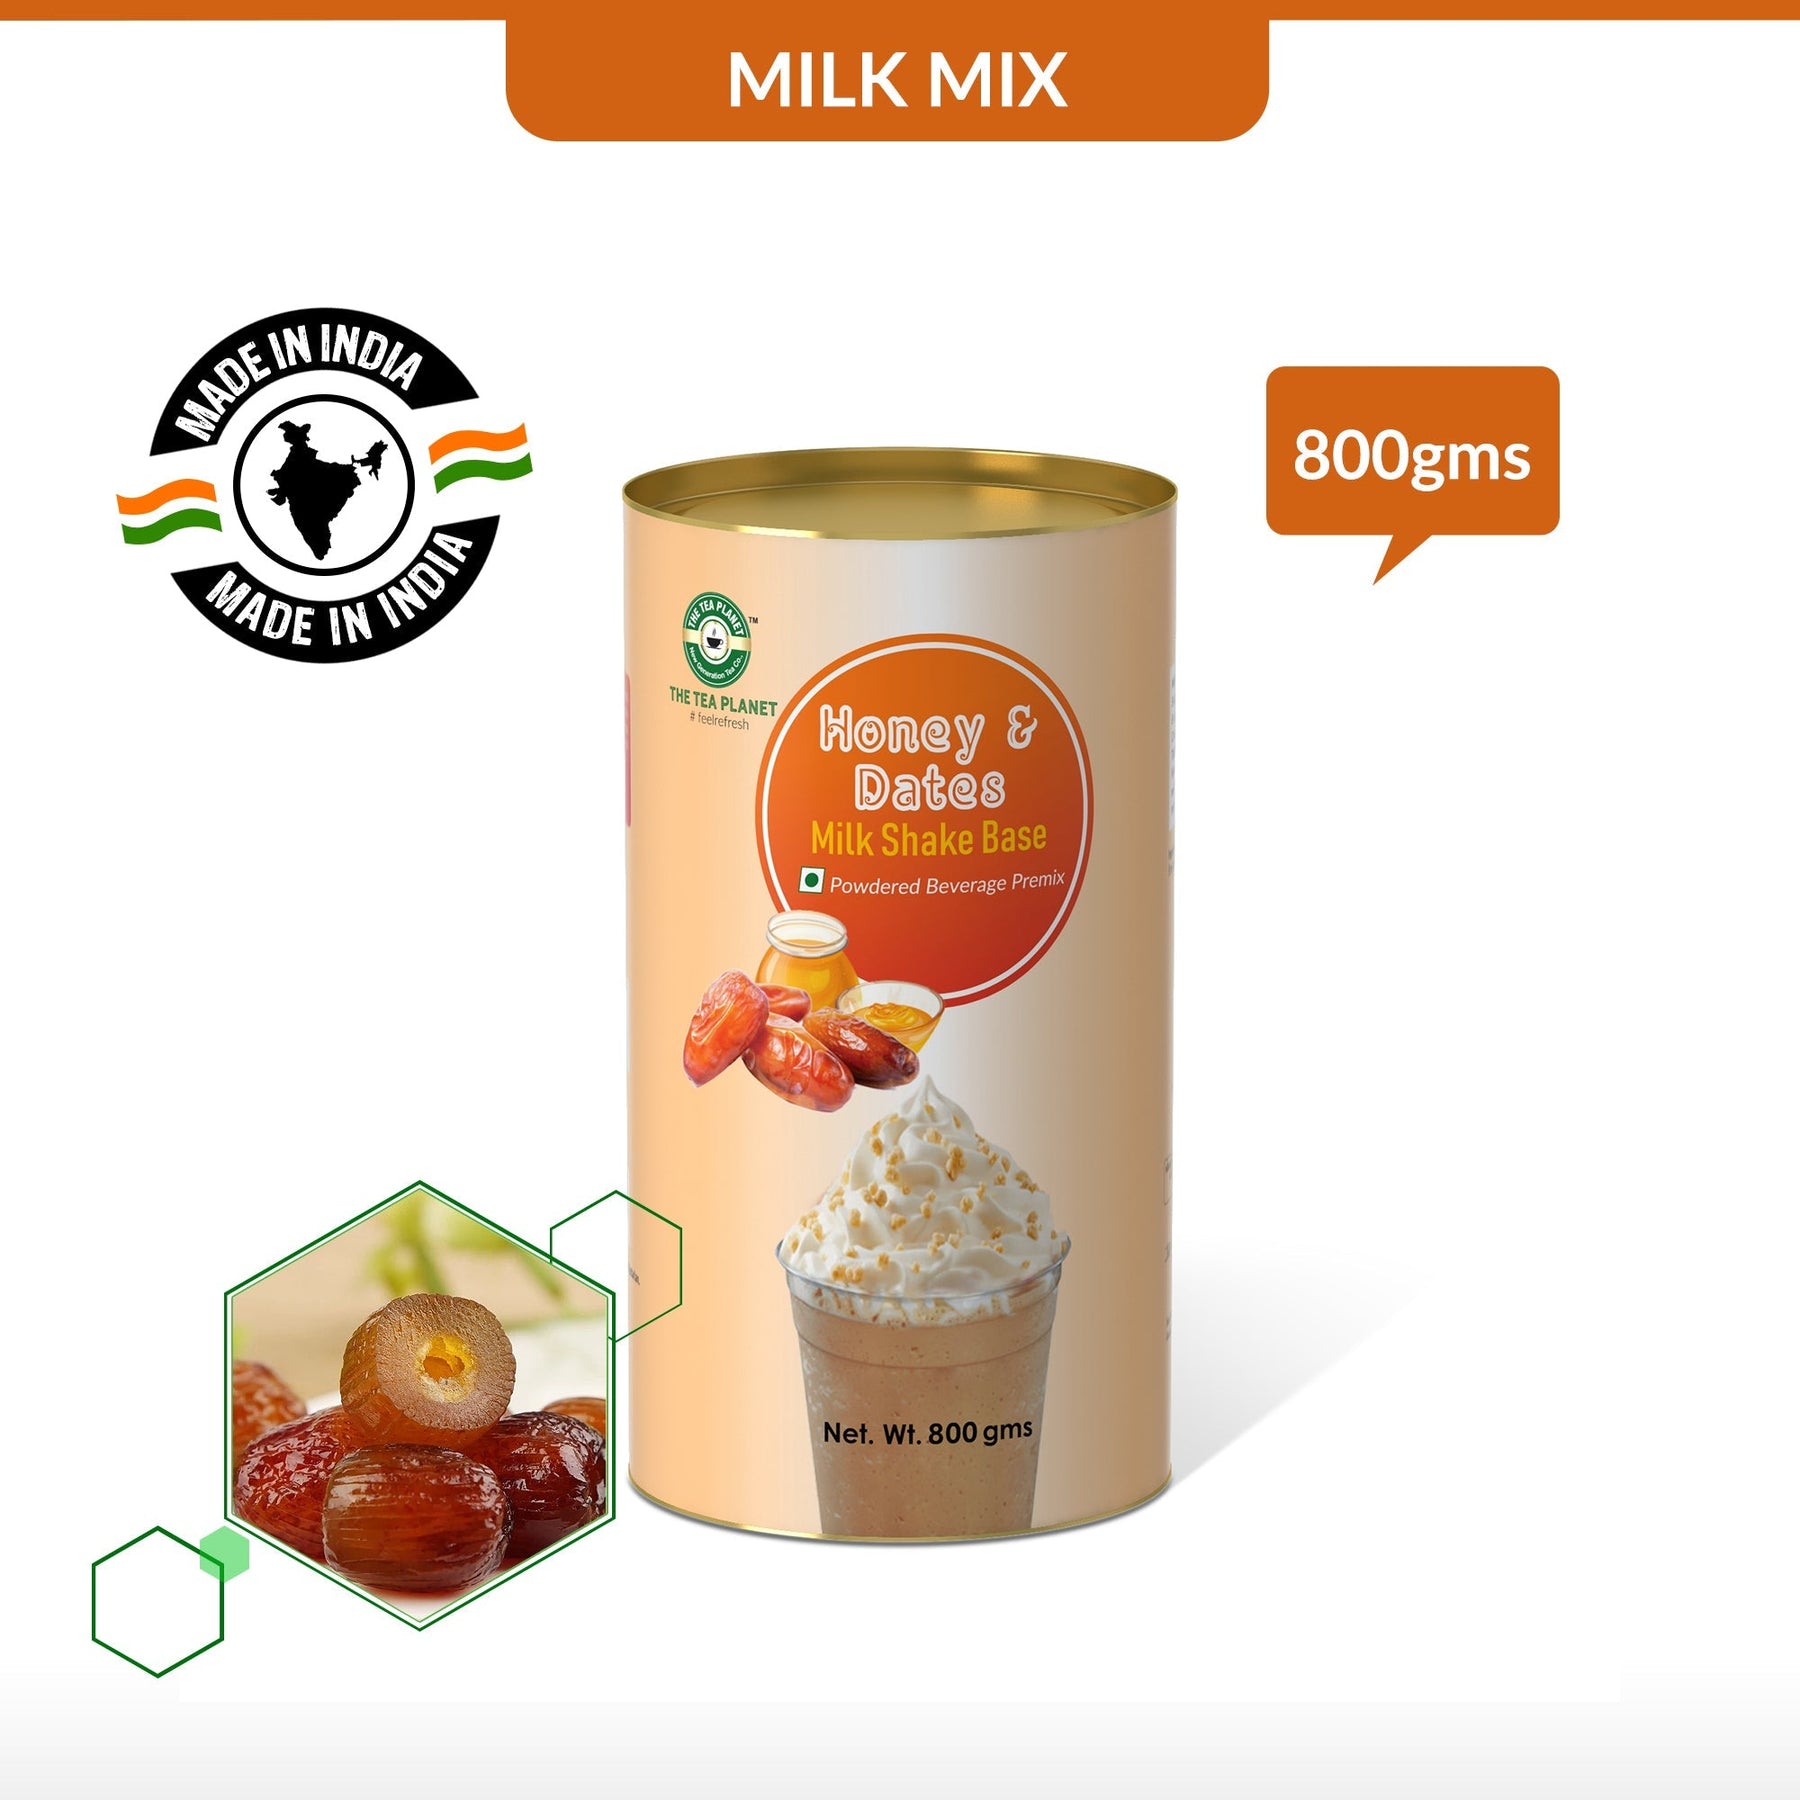 Honey & Dates Milkshake Mix - 800 gms